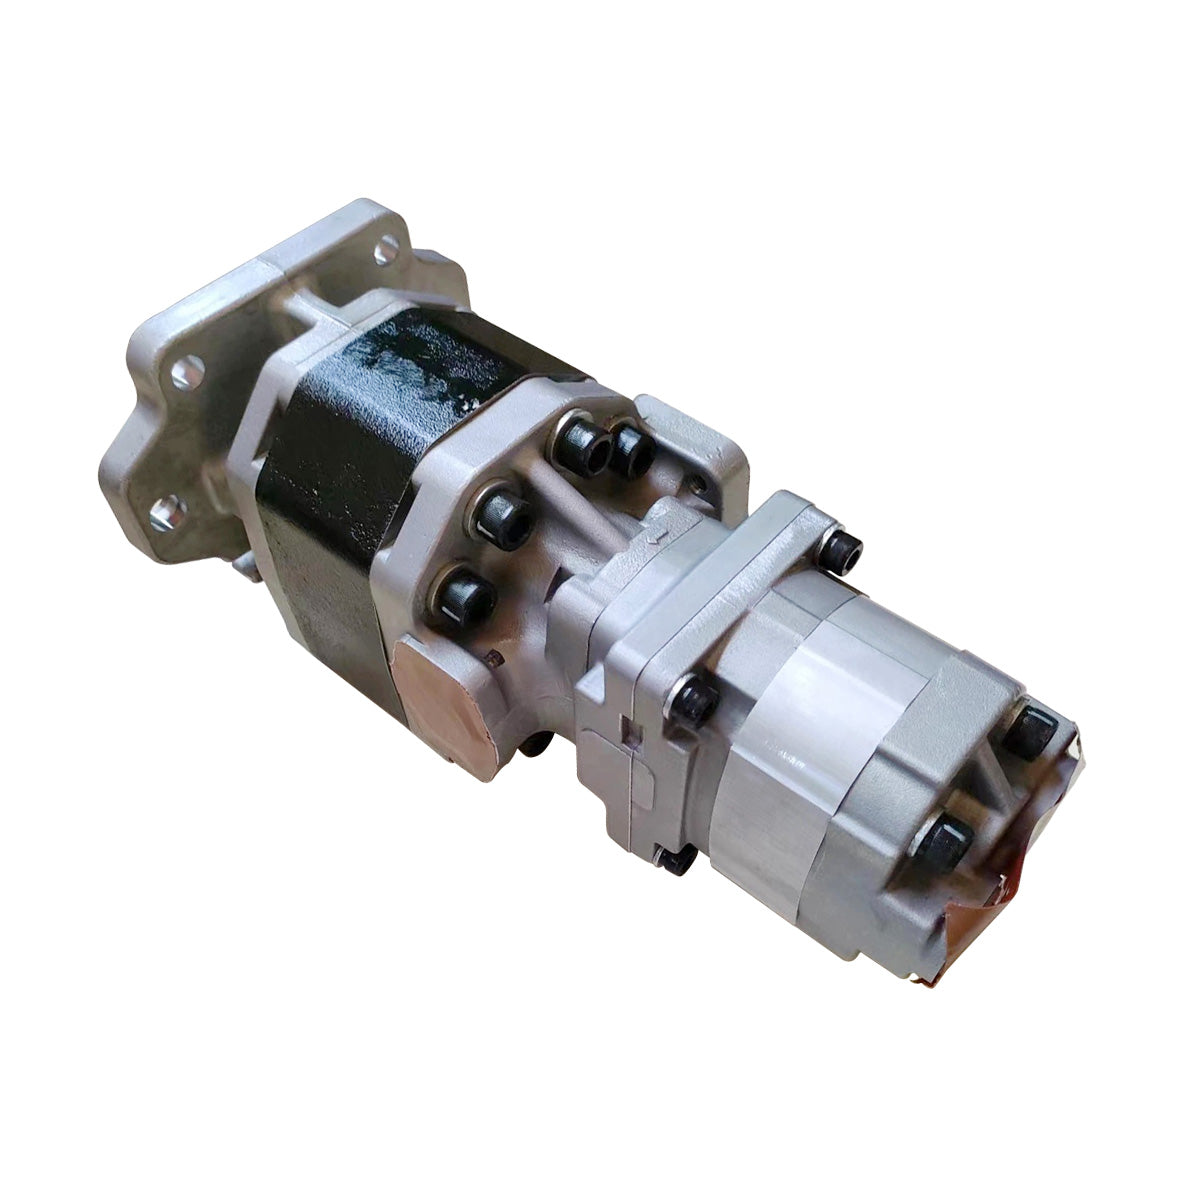 705-95-05140 Hydraulic Gear Pump Assy for Komatsu HD465-7R HD465-7 HD605-7 - Sinocmp